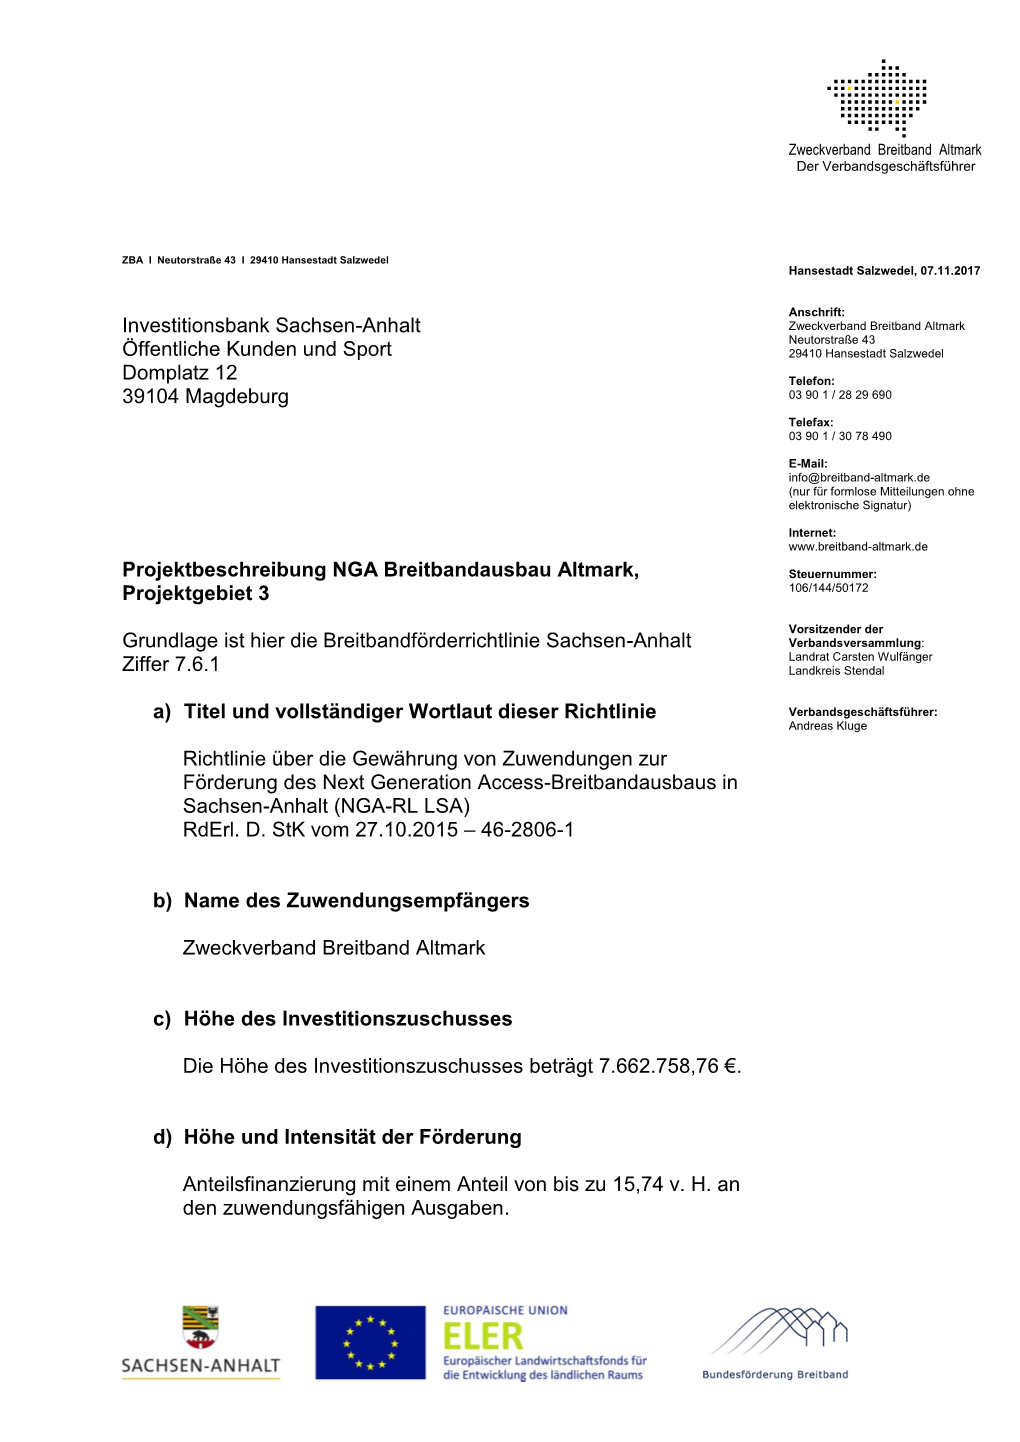 Projektbeschreibung Des Zweckverbandes Breitband Altmark Für Die Erschließung Des Projektgebietes 3